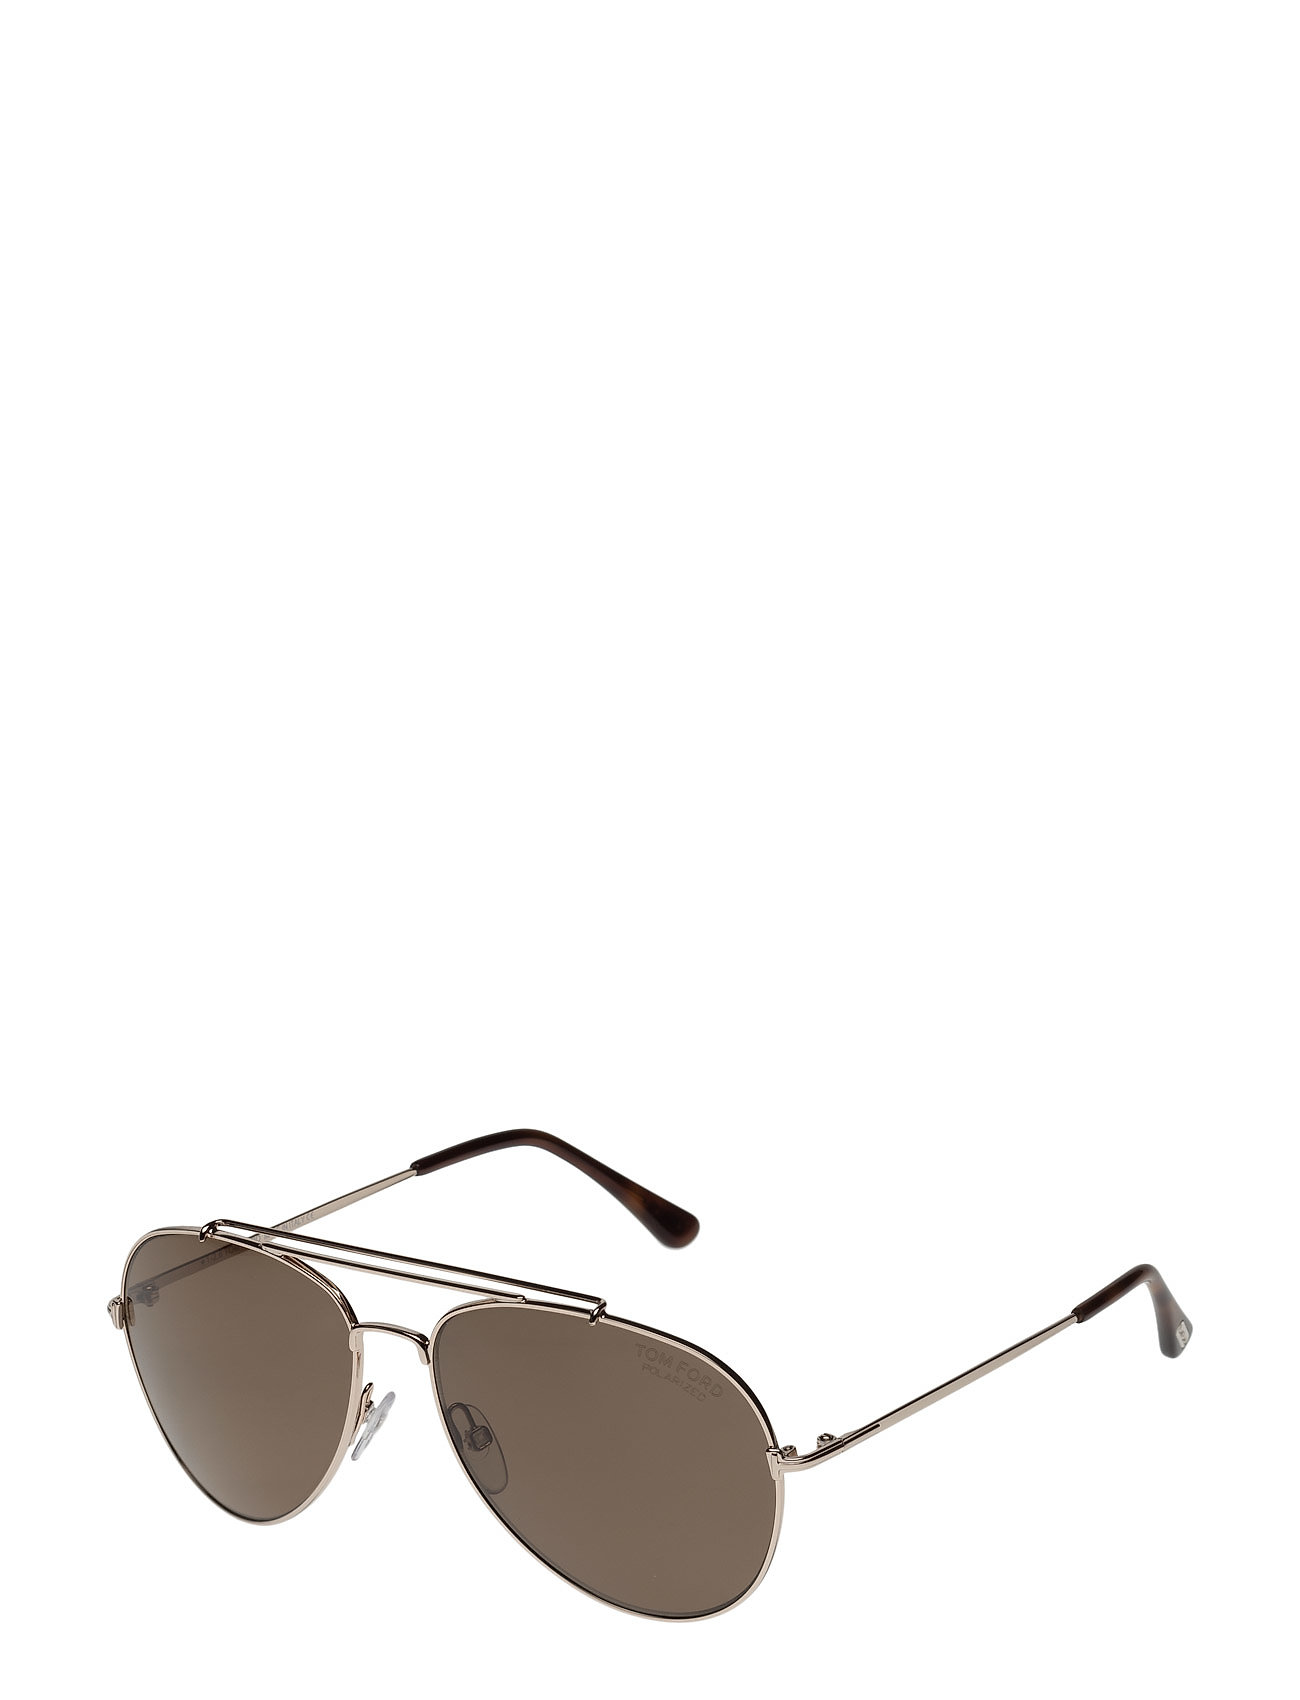 Nikke illoyalitet Lad os gøre det Tom Ford Indiana aviator solbriller fra Tom Ford Sunglasses til dame i Guld  - Pashion.dk